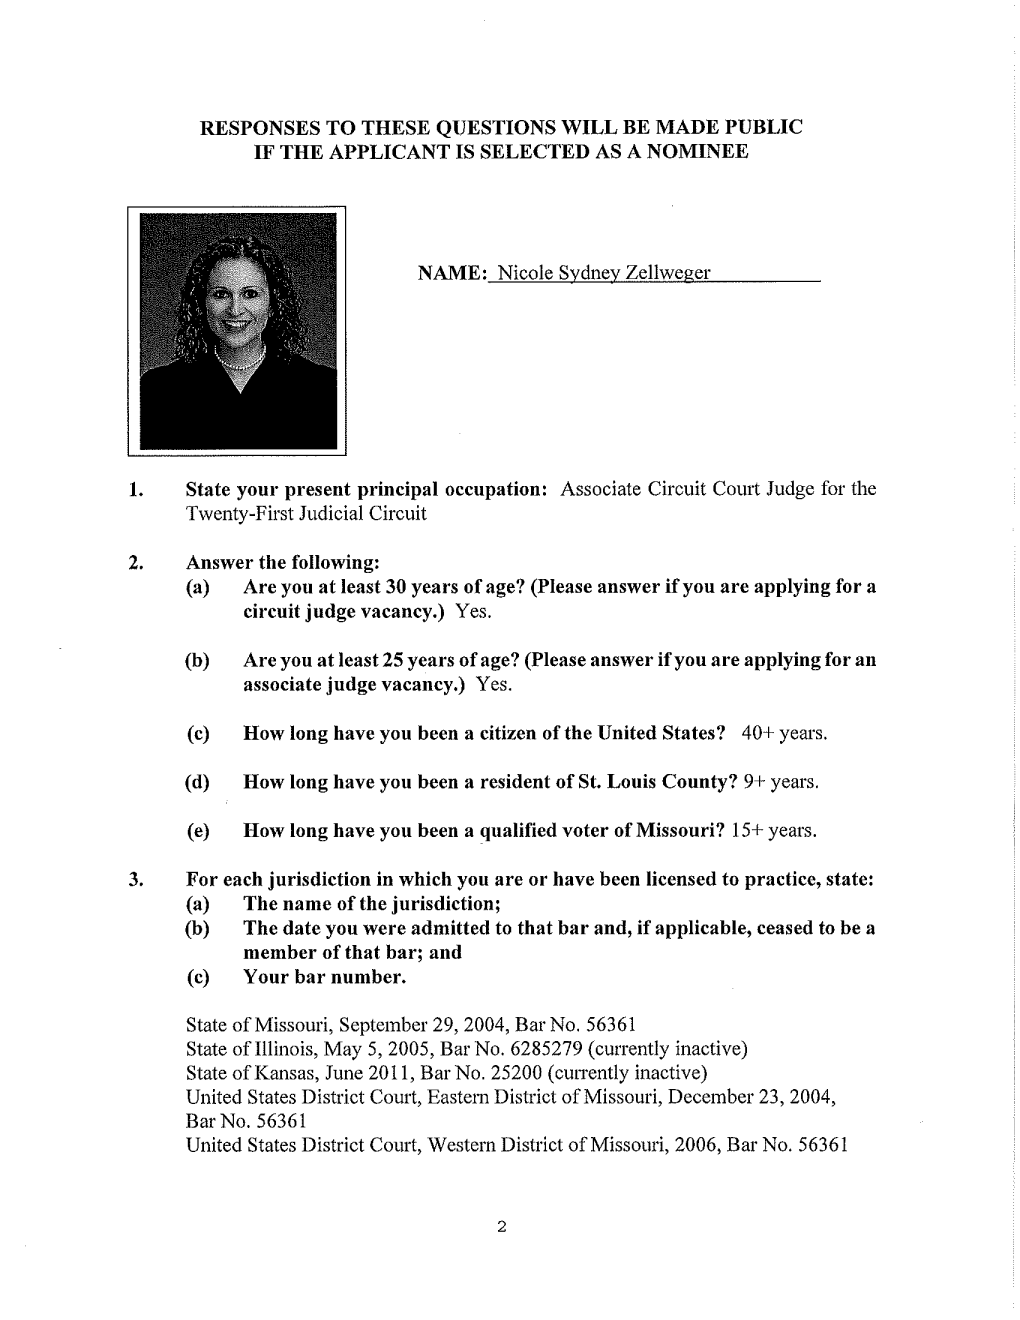 Application of Nicole Zellweger for Warner Circuit Judge Vacancy in St